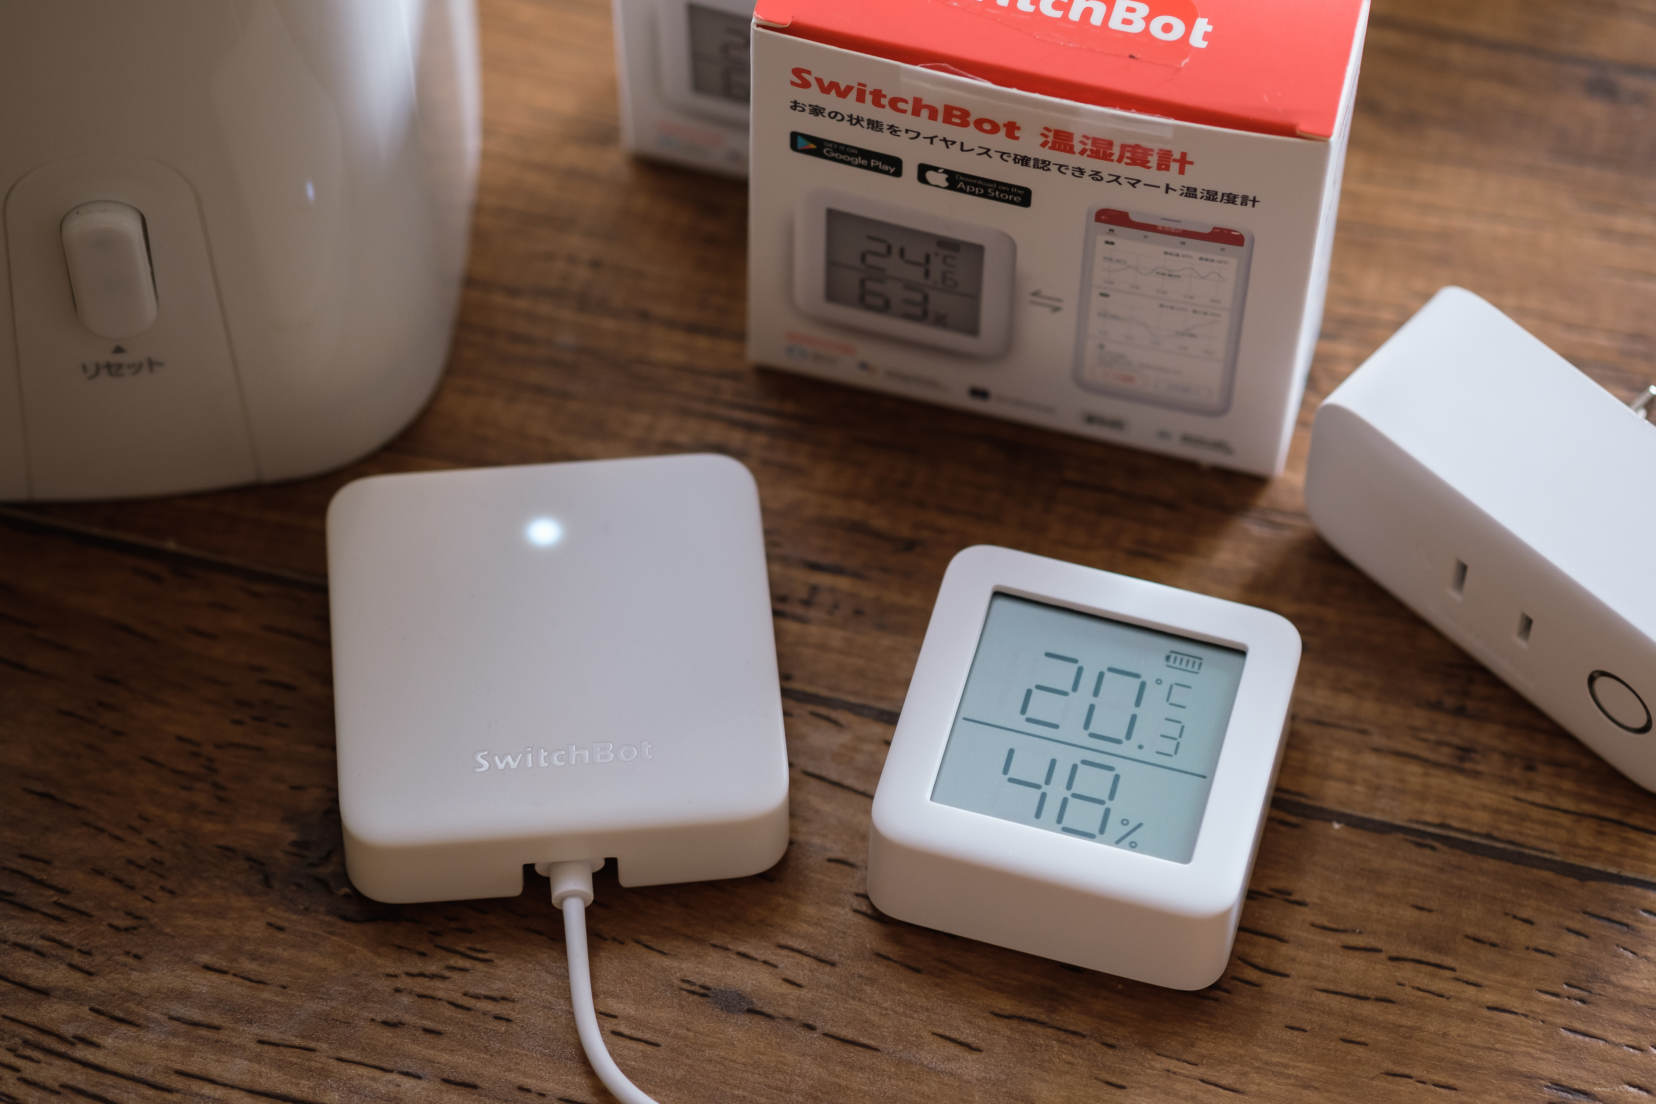 お部屋の温度湿度対策に。SwitchBot温湿度計が手軽にログがとれたりスマート家電と連携できてとっても便利 | かめらとブログ。